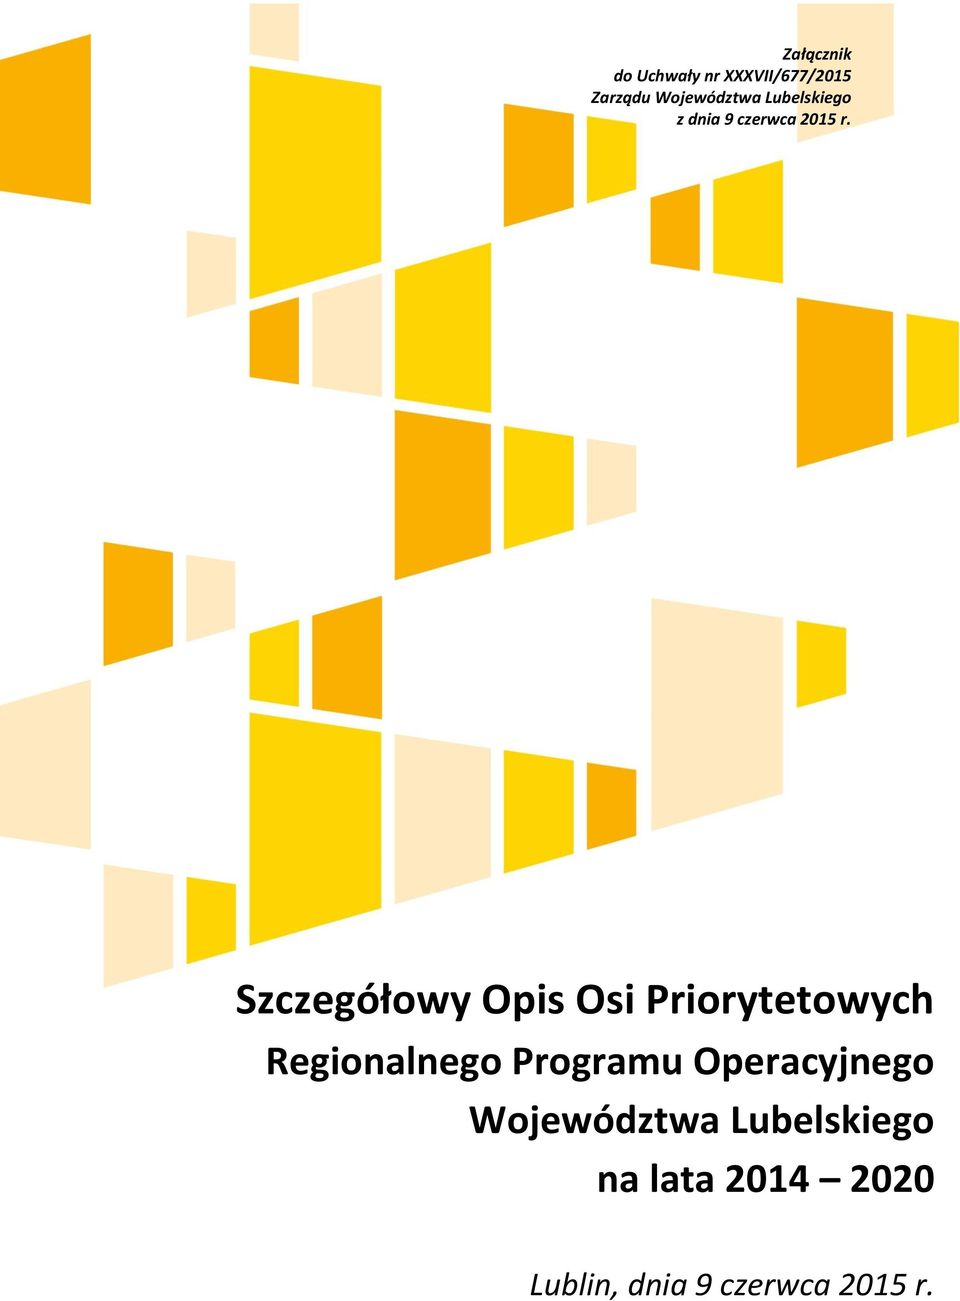 Szczegółowy Opis Osi Priorytetowych Regionalnego Programu